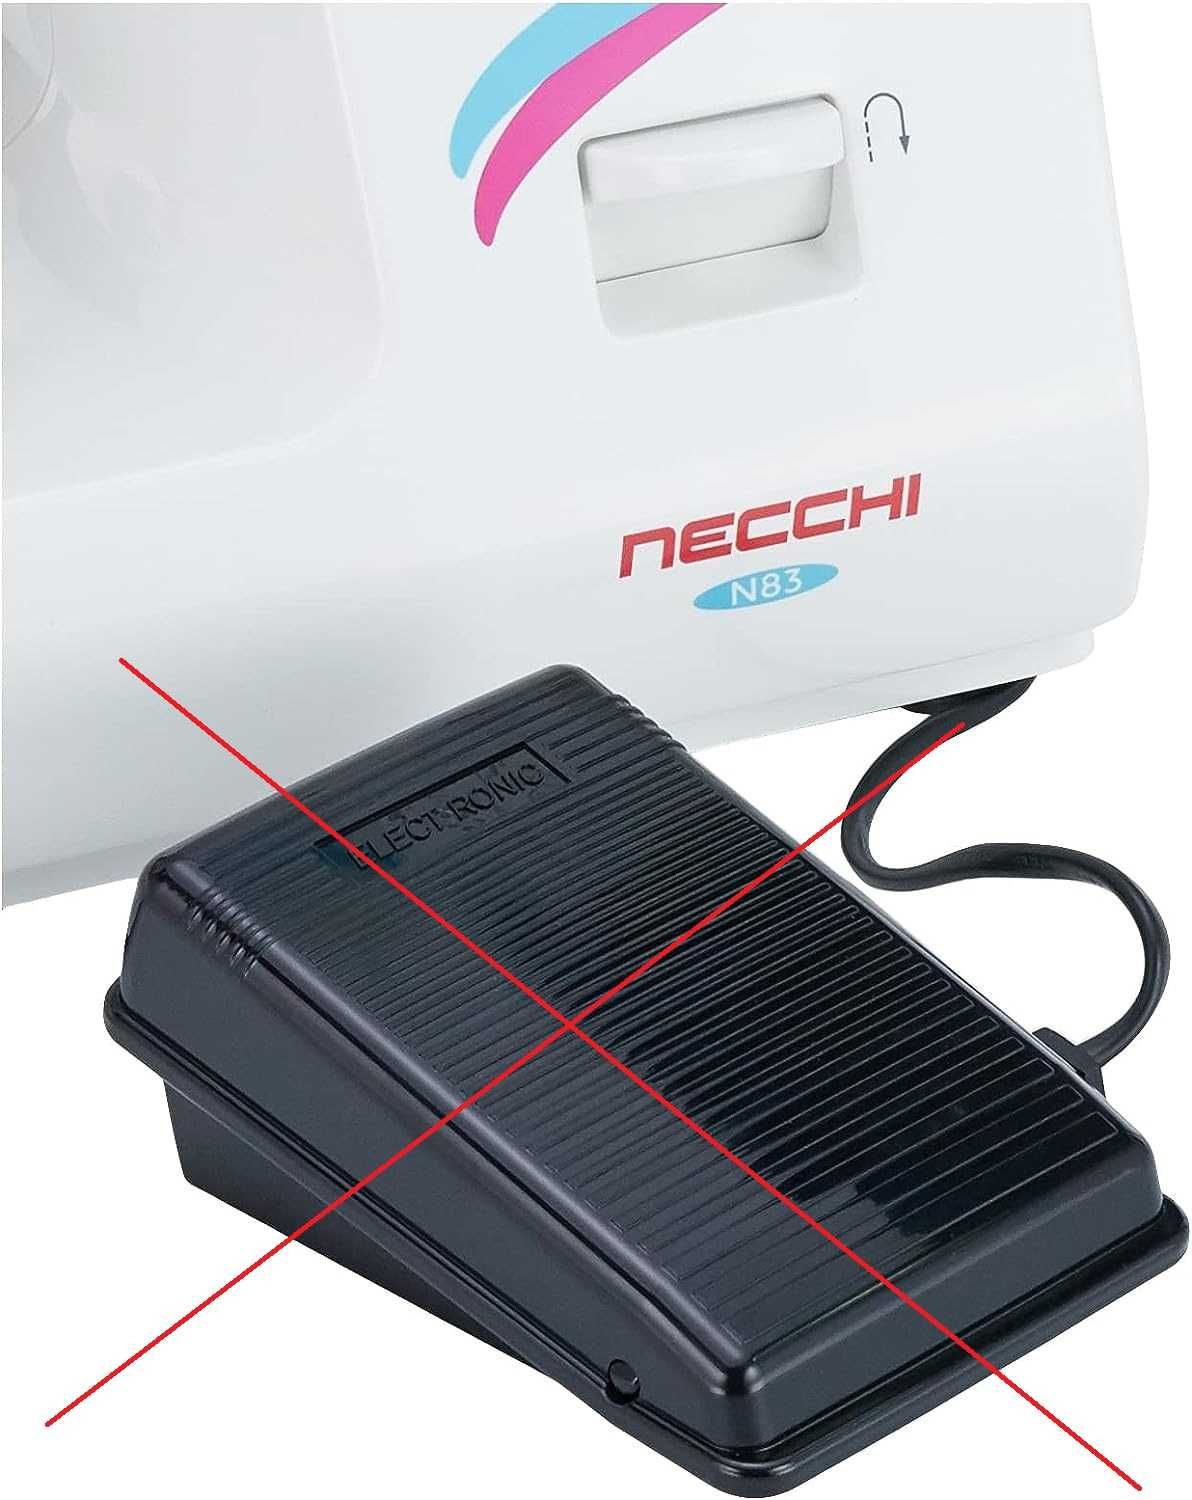 Automatyczna maszyna do szycia Necchi N83 NIEKOMPLETNA